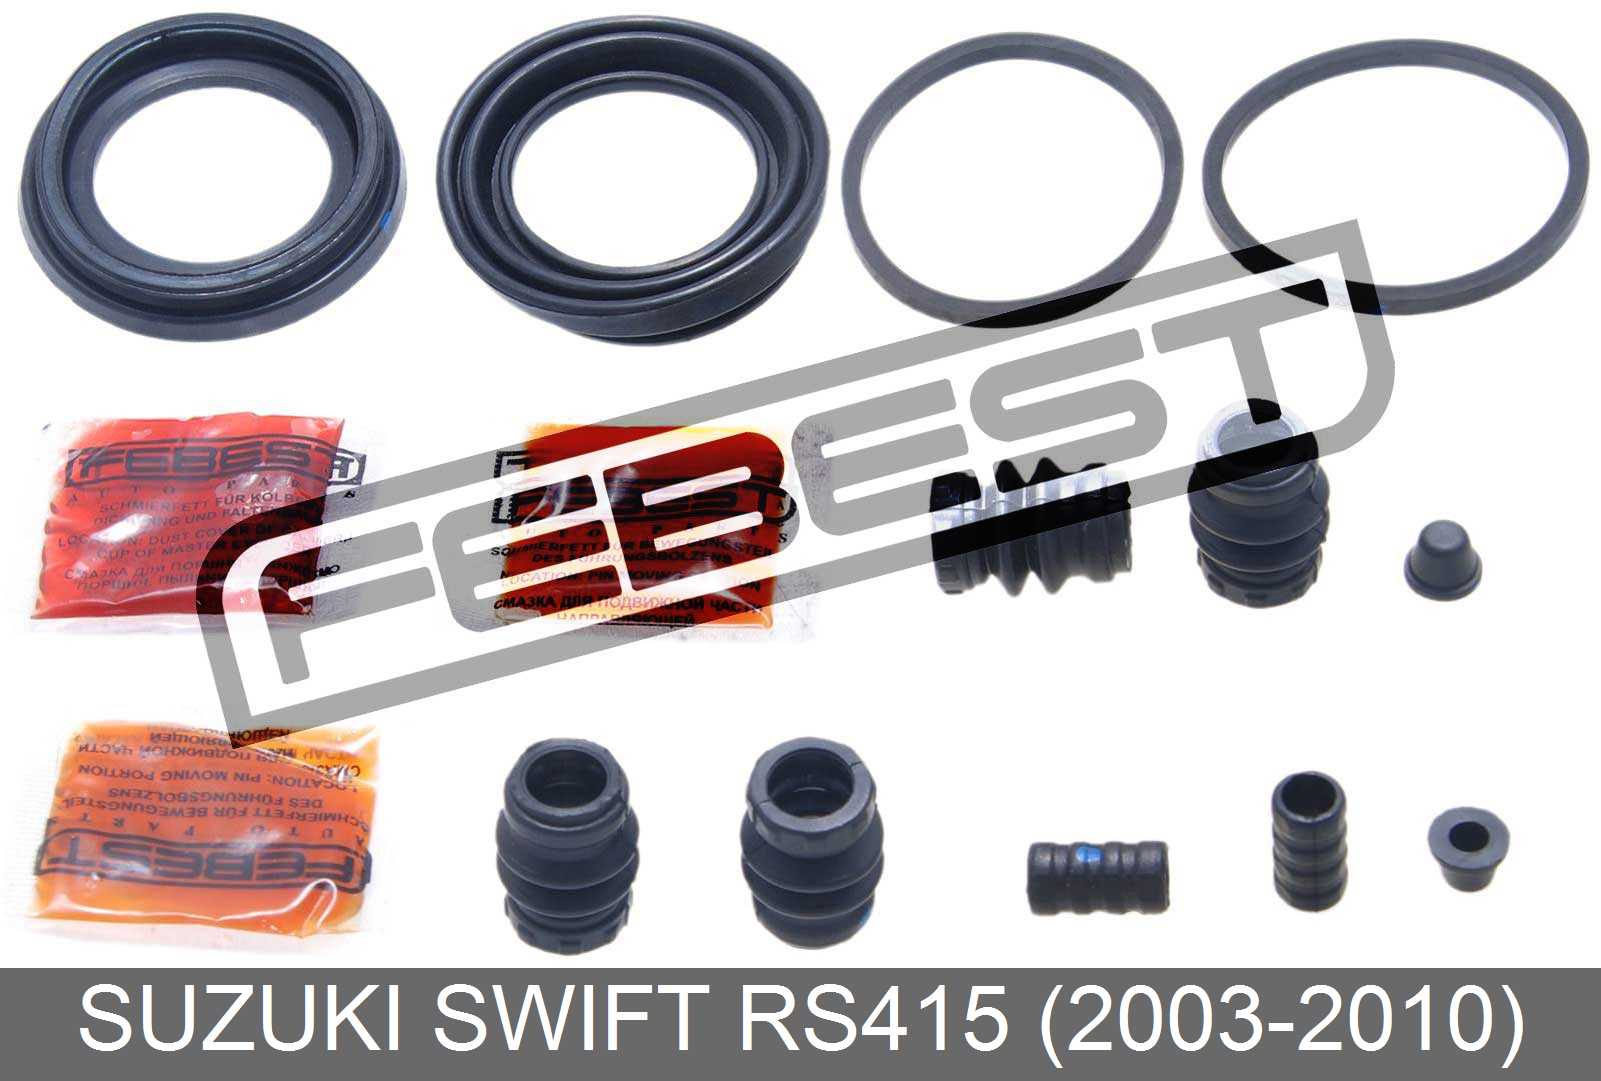 2003-2010 Cylinder Kit For Suzuki Swift Rs415